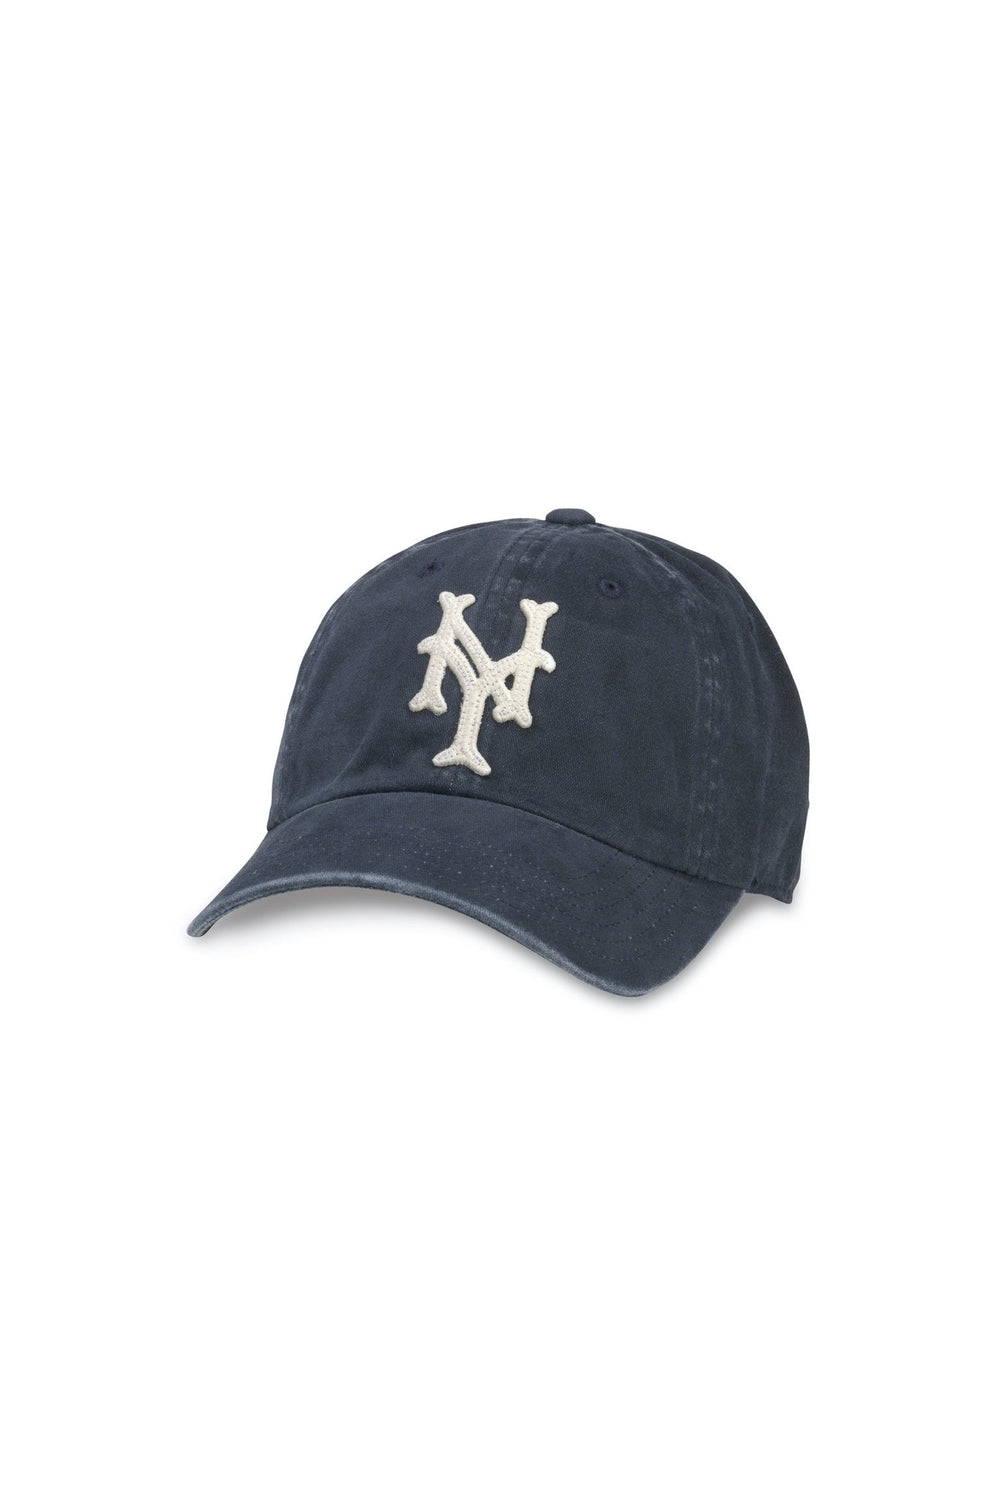 NY Archive Ball Cap